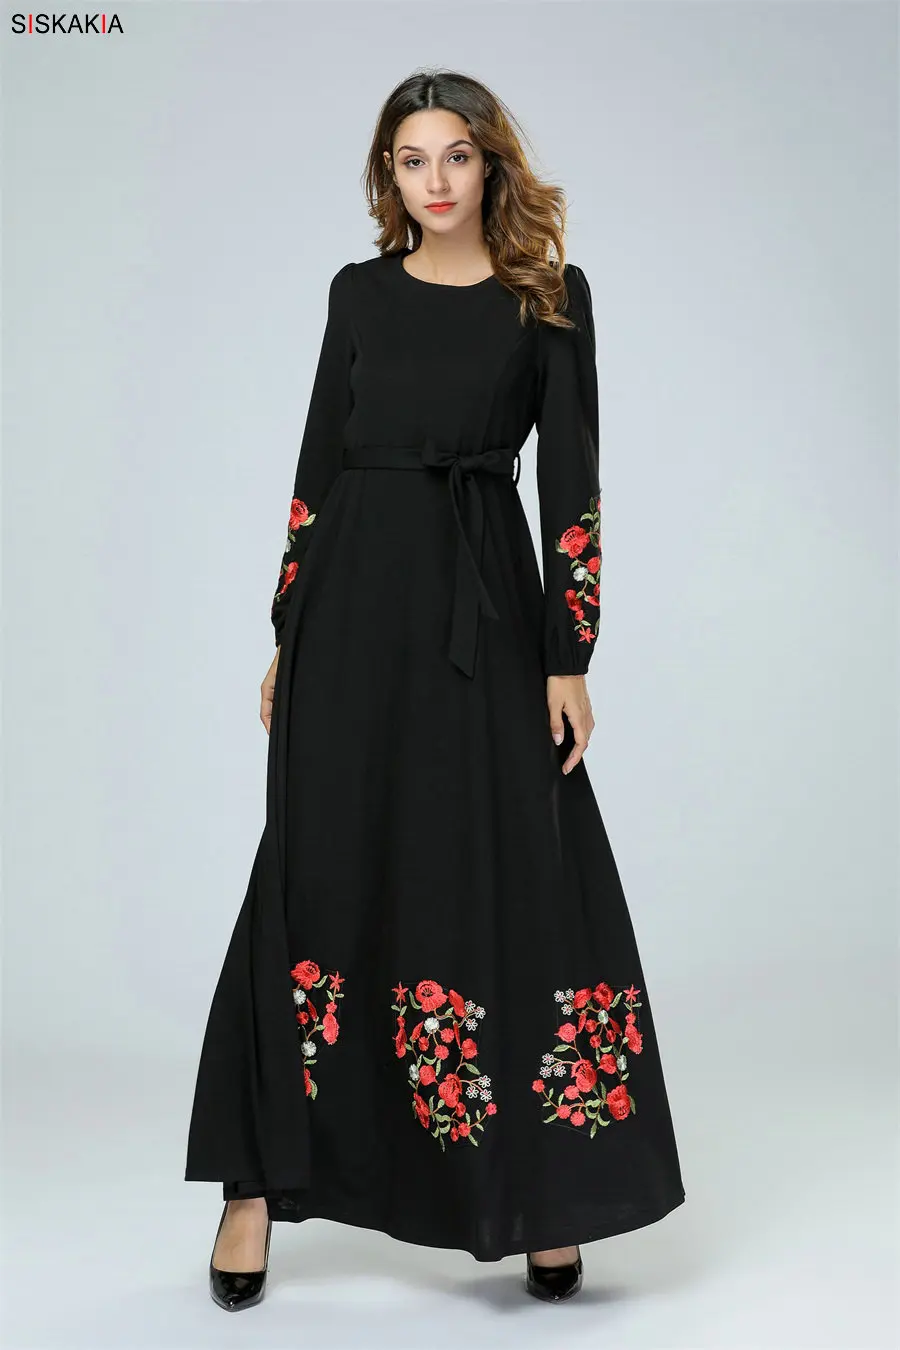 Siskakia, Черное длинное платье, элегантное, с цветочной вышивкой, мусульманские платья, круглый вырез, длинный рукав, свинг, Арабская одежда, осень, новинка